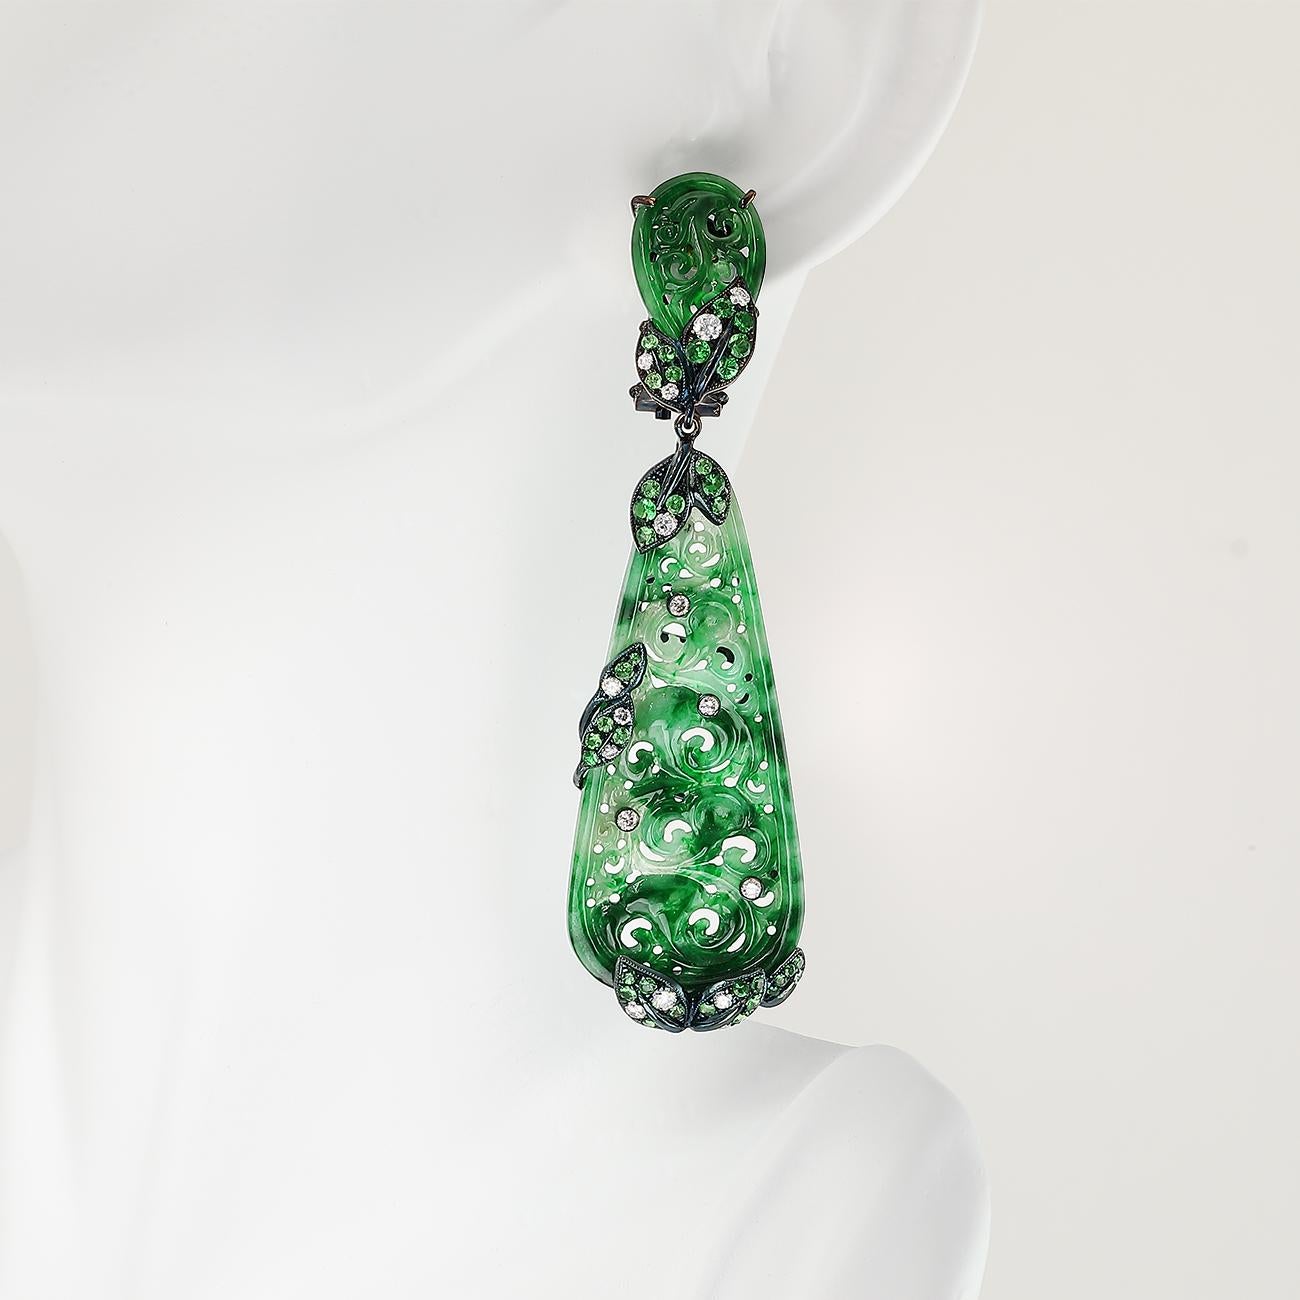 Un jade étonnant et minutieusement sculpté, parsemé de diamants et de grenats tsavorites, constitue cette pièce unique de la collection de Boulle.

• Jade (28,05 ctw.)
• Diamants (1,15 ctw.)
• Grenats tsavorites (2,53 ctw.)
• or blanc 18K avec